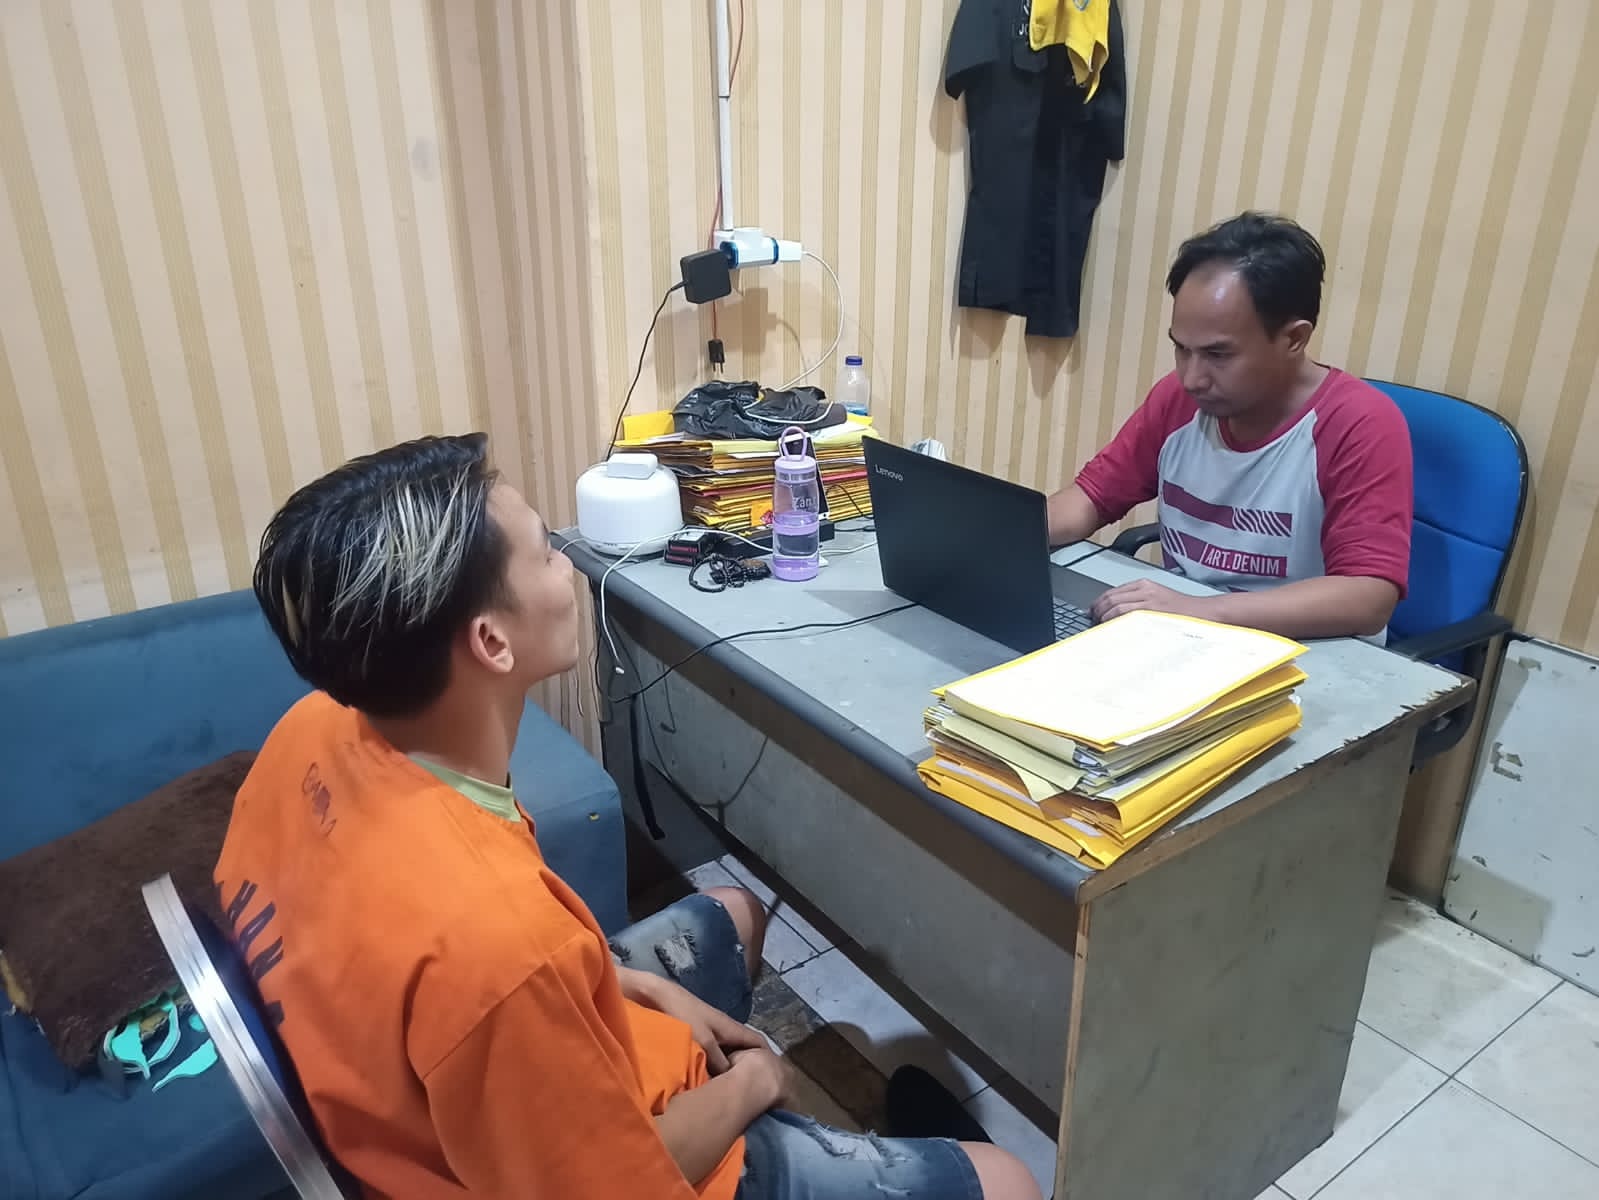 Penjual Tramadol Hexcymer di Tangerang Dibekuk Polisi, Ancaman Hukumannya Gak Main-main